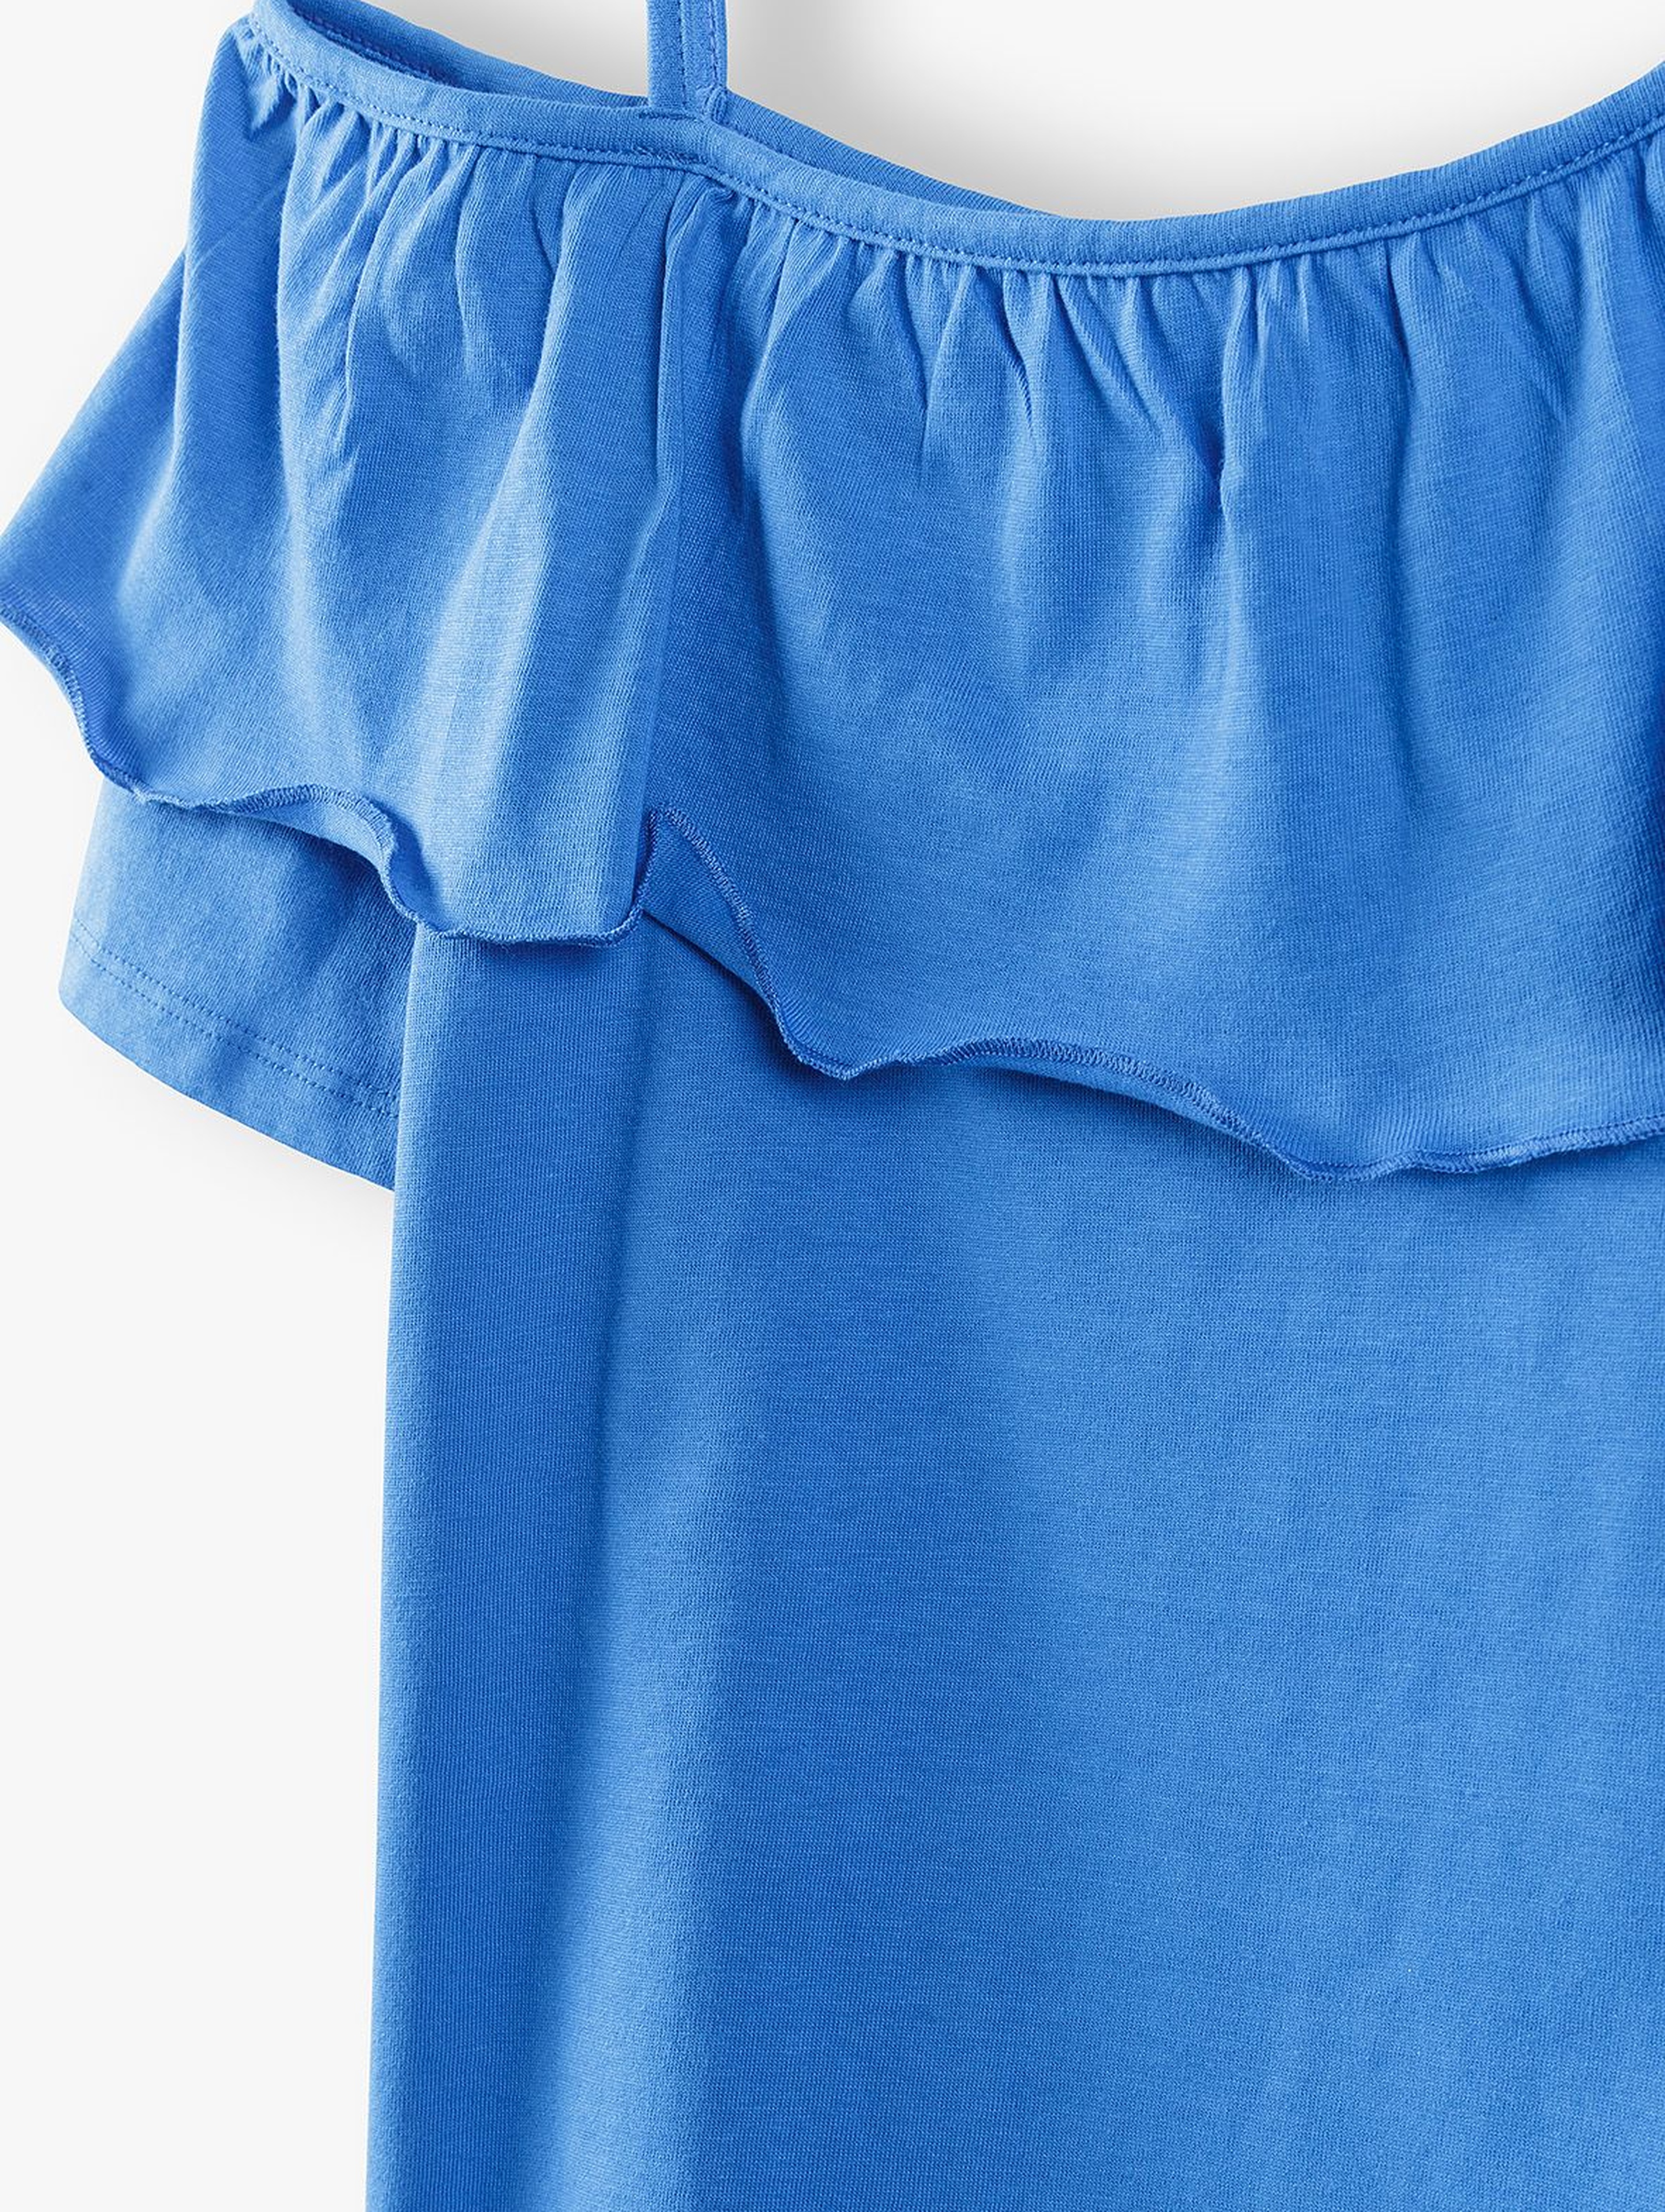 T- shirt dziewczęcy na ramiączka z falbankami - niebieskia